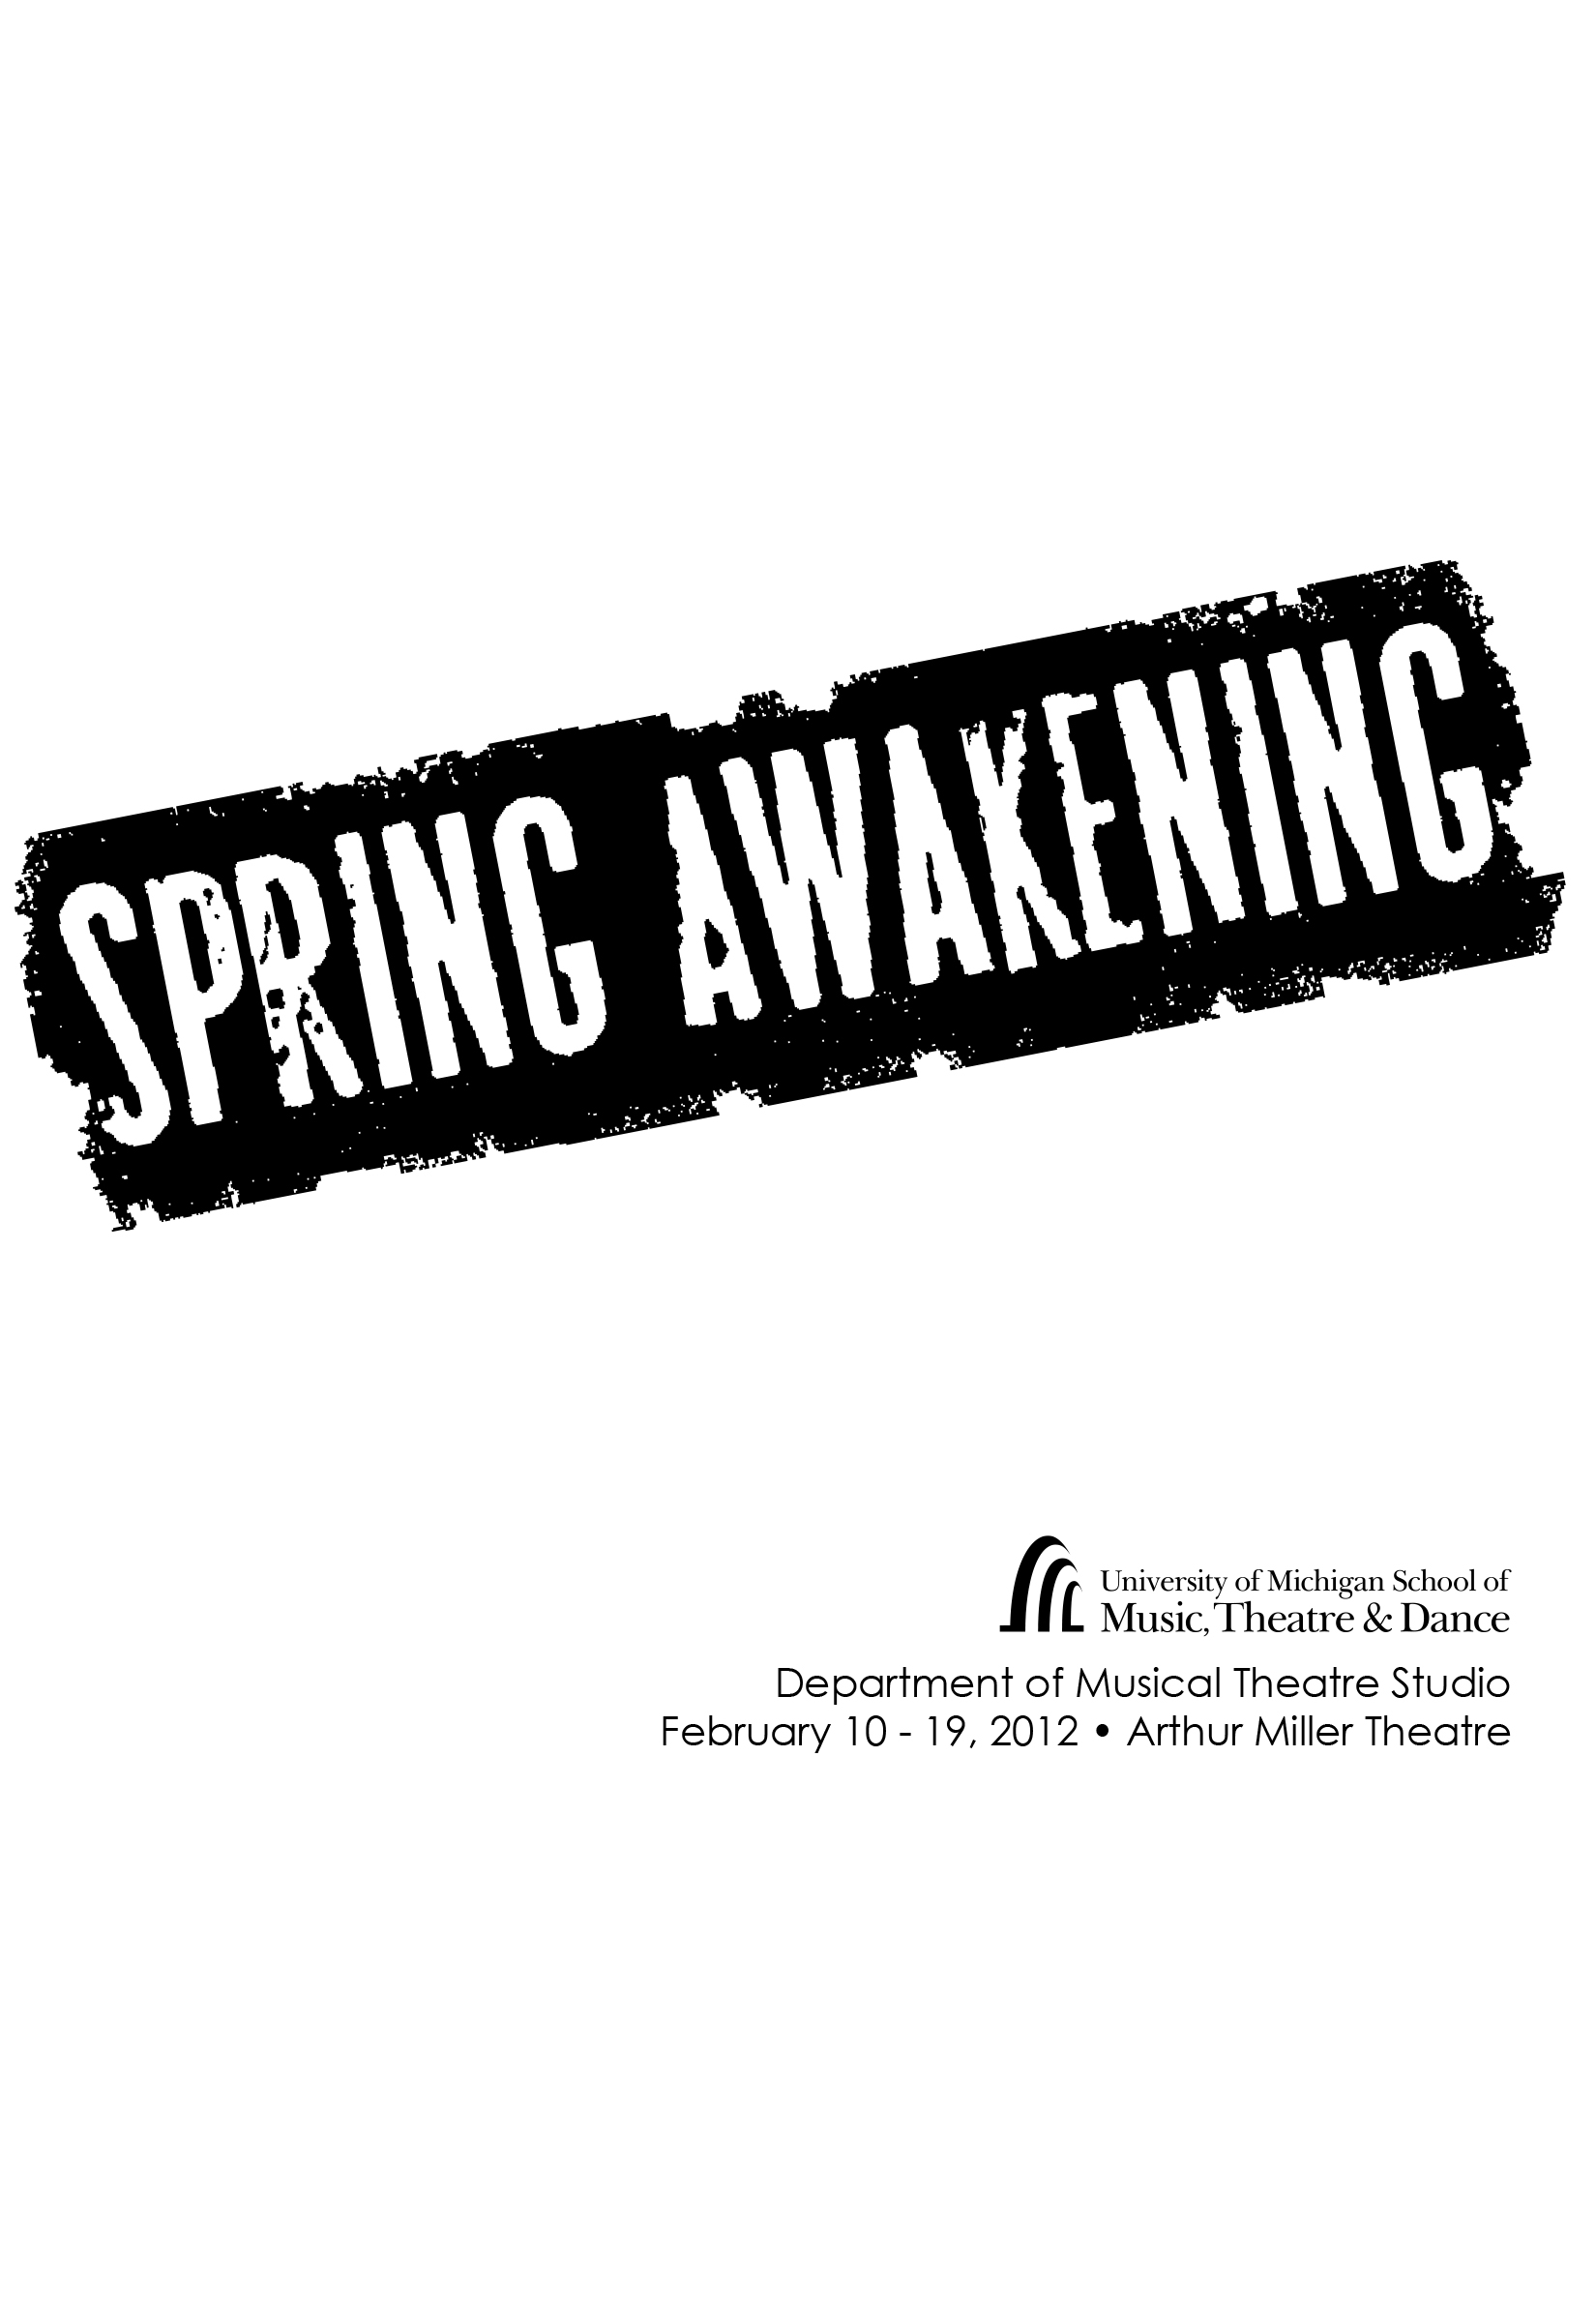 https://smtd.umich.edu/wp-content/uploads/2022/06/spring-awakening-poster.jpg